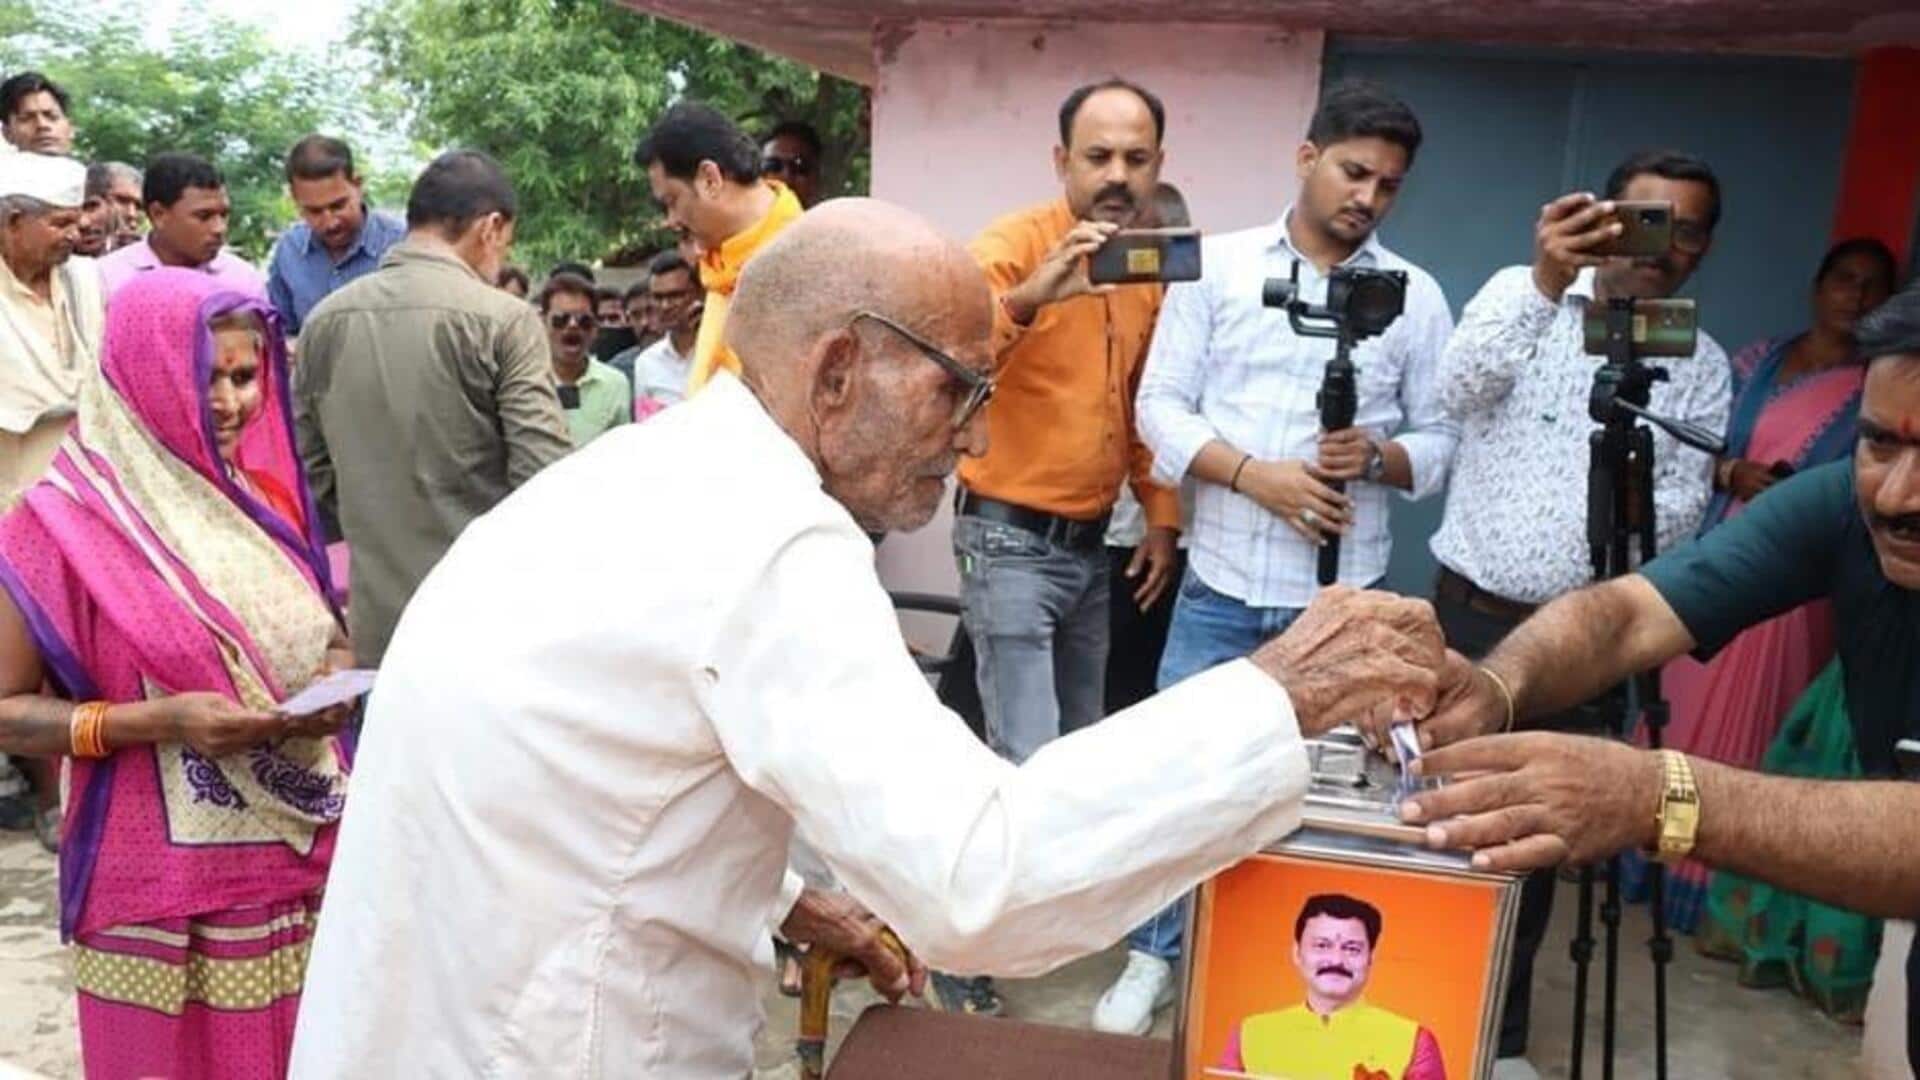 मध्य प्रदेश: भाजपा विधायक जनता की राय जानने के लिए करा रहे 'डेमो चुनाव'